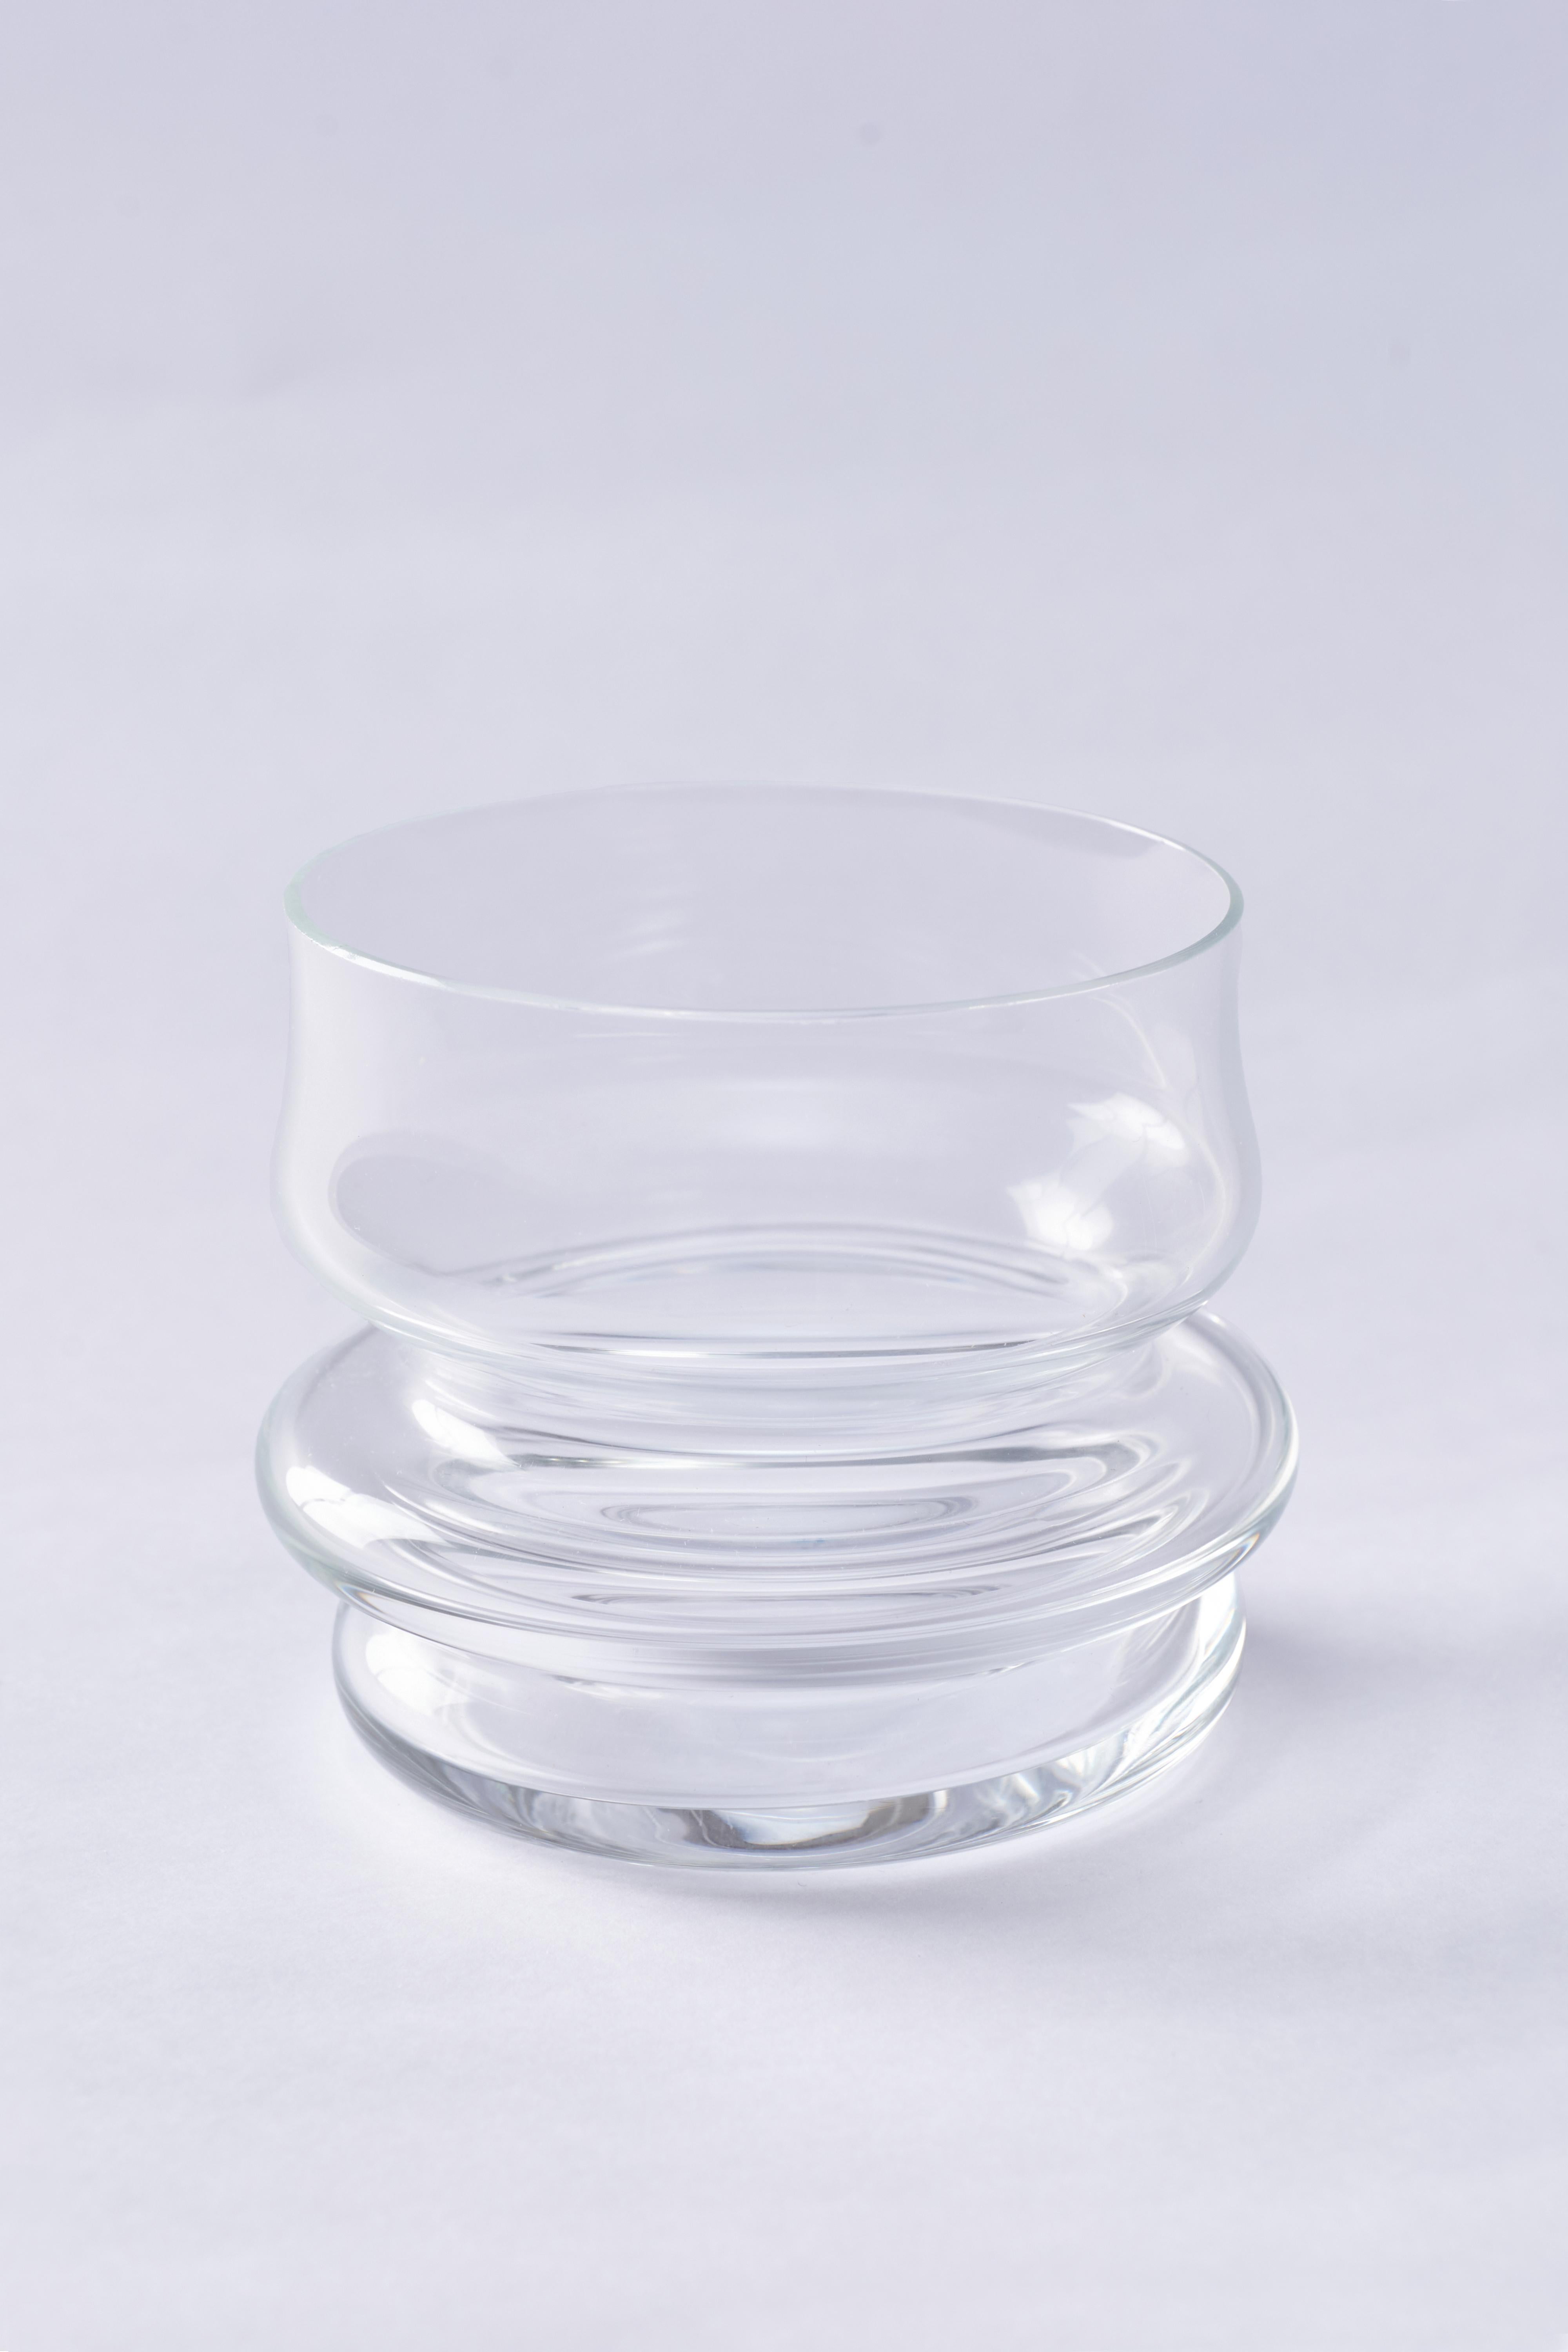 Le cristal, comme le verre, présente une caractéristique très intéressante dans la mesure où sa composition et son comportement peuvent être catalogués à la fois comme solides et liquides. C'est ce qu'on appelle 